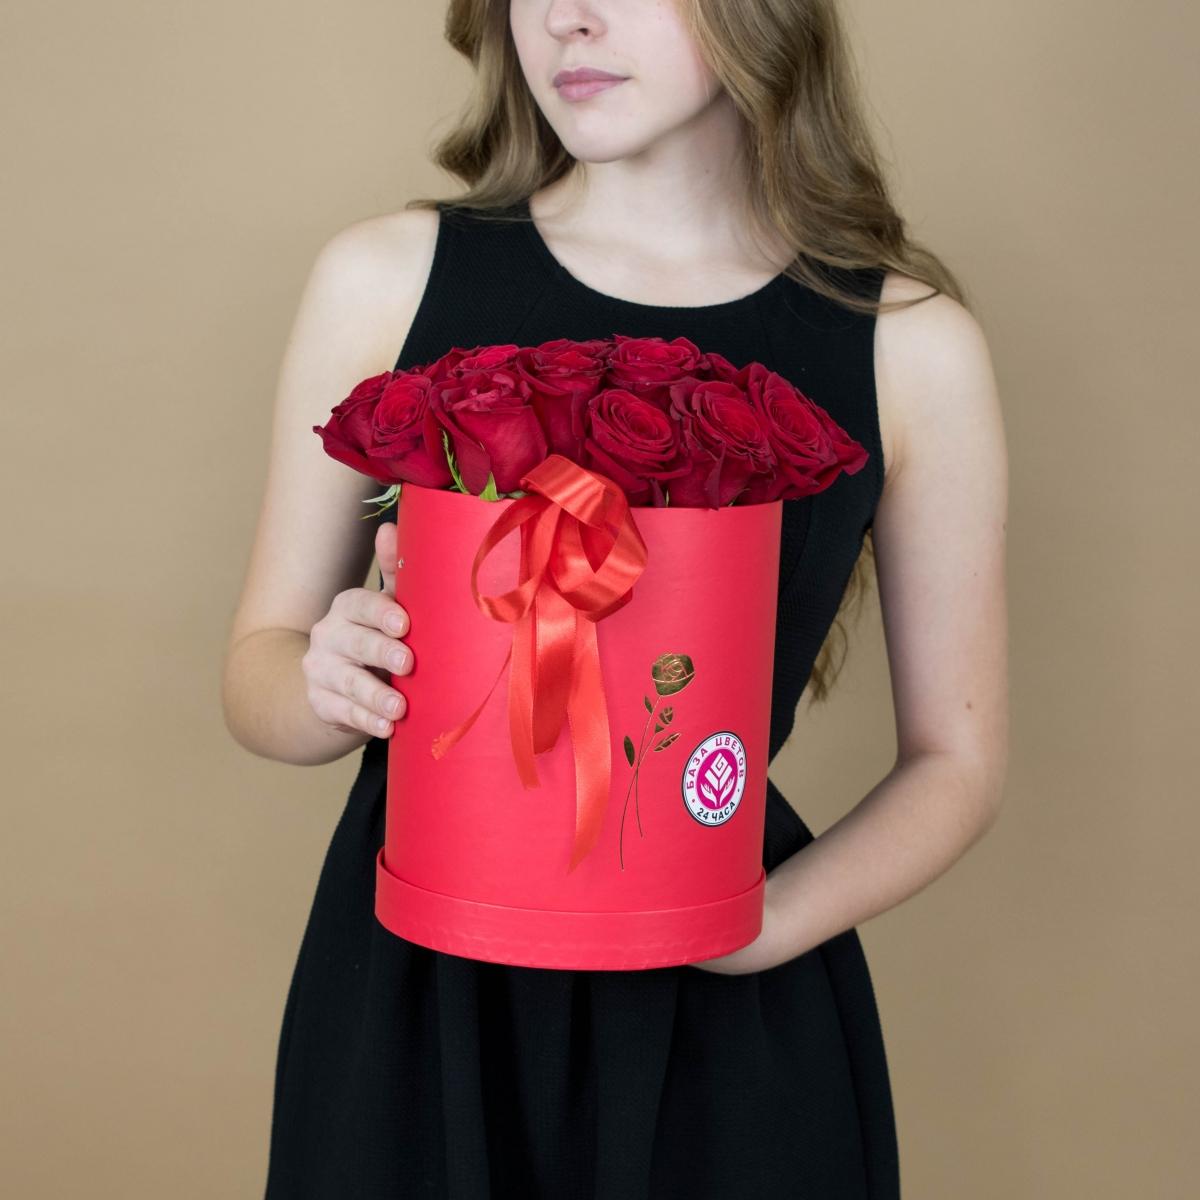 Розы красные в шляпной коробке артикул букета  2067zn